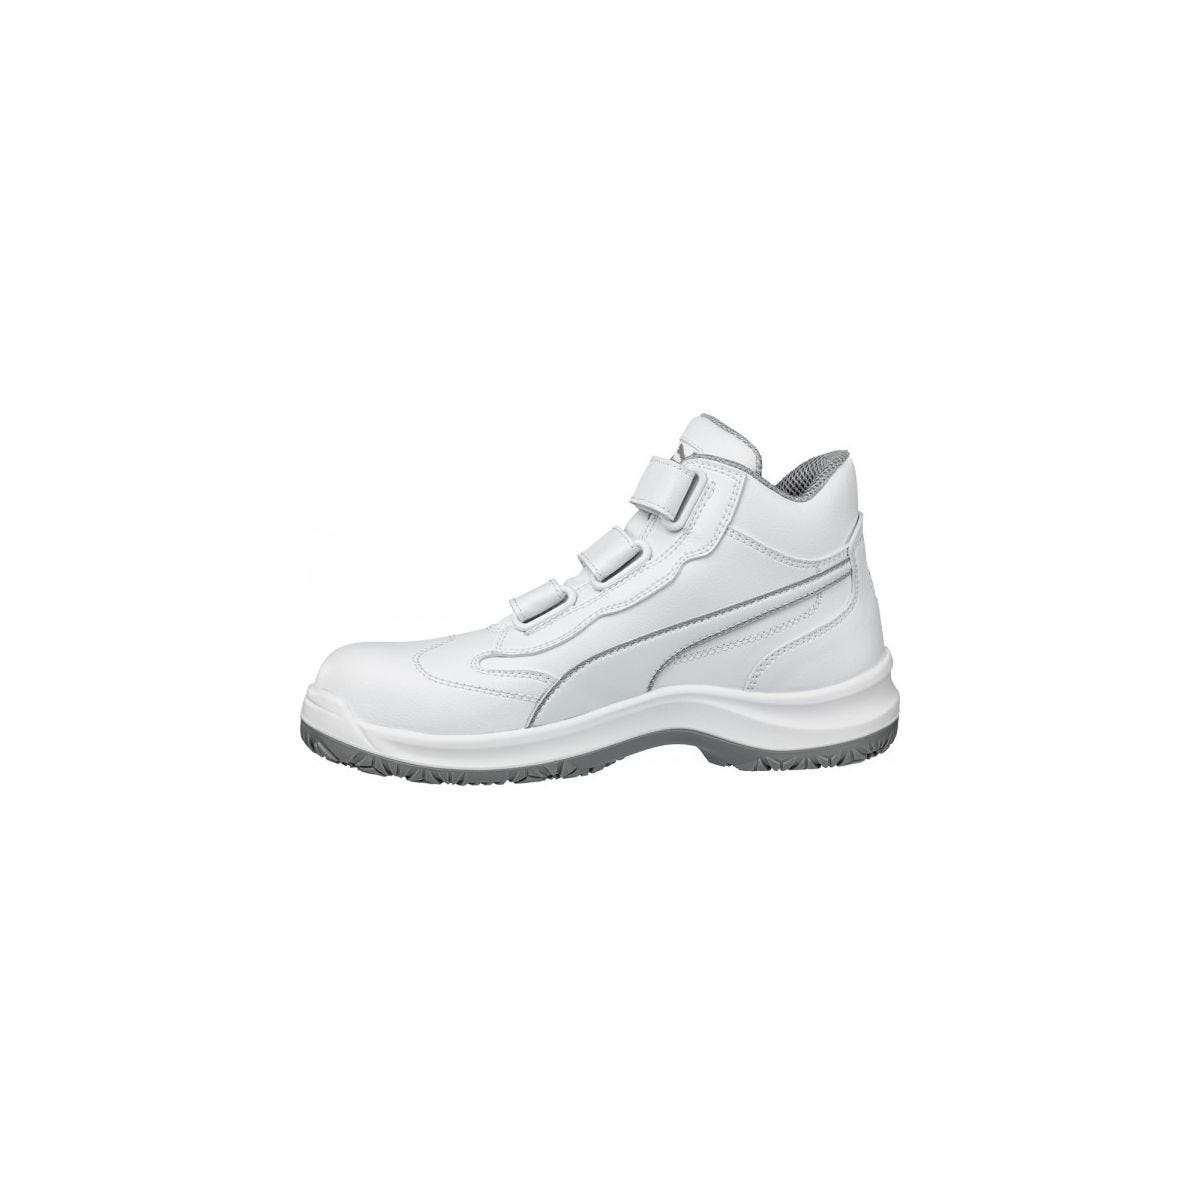 Chaussures de sécurité Absolute Mid S2 Blanc - Puma - Taille 46 4